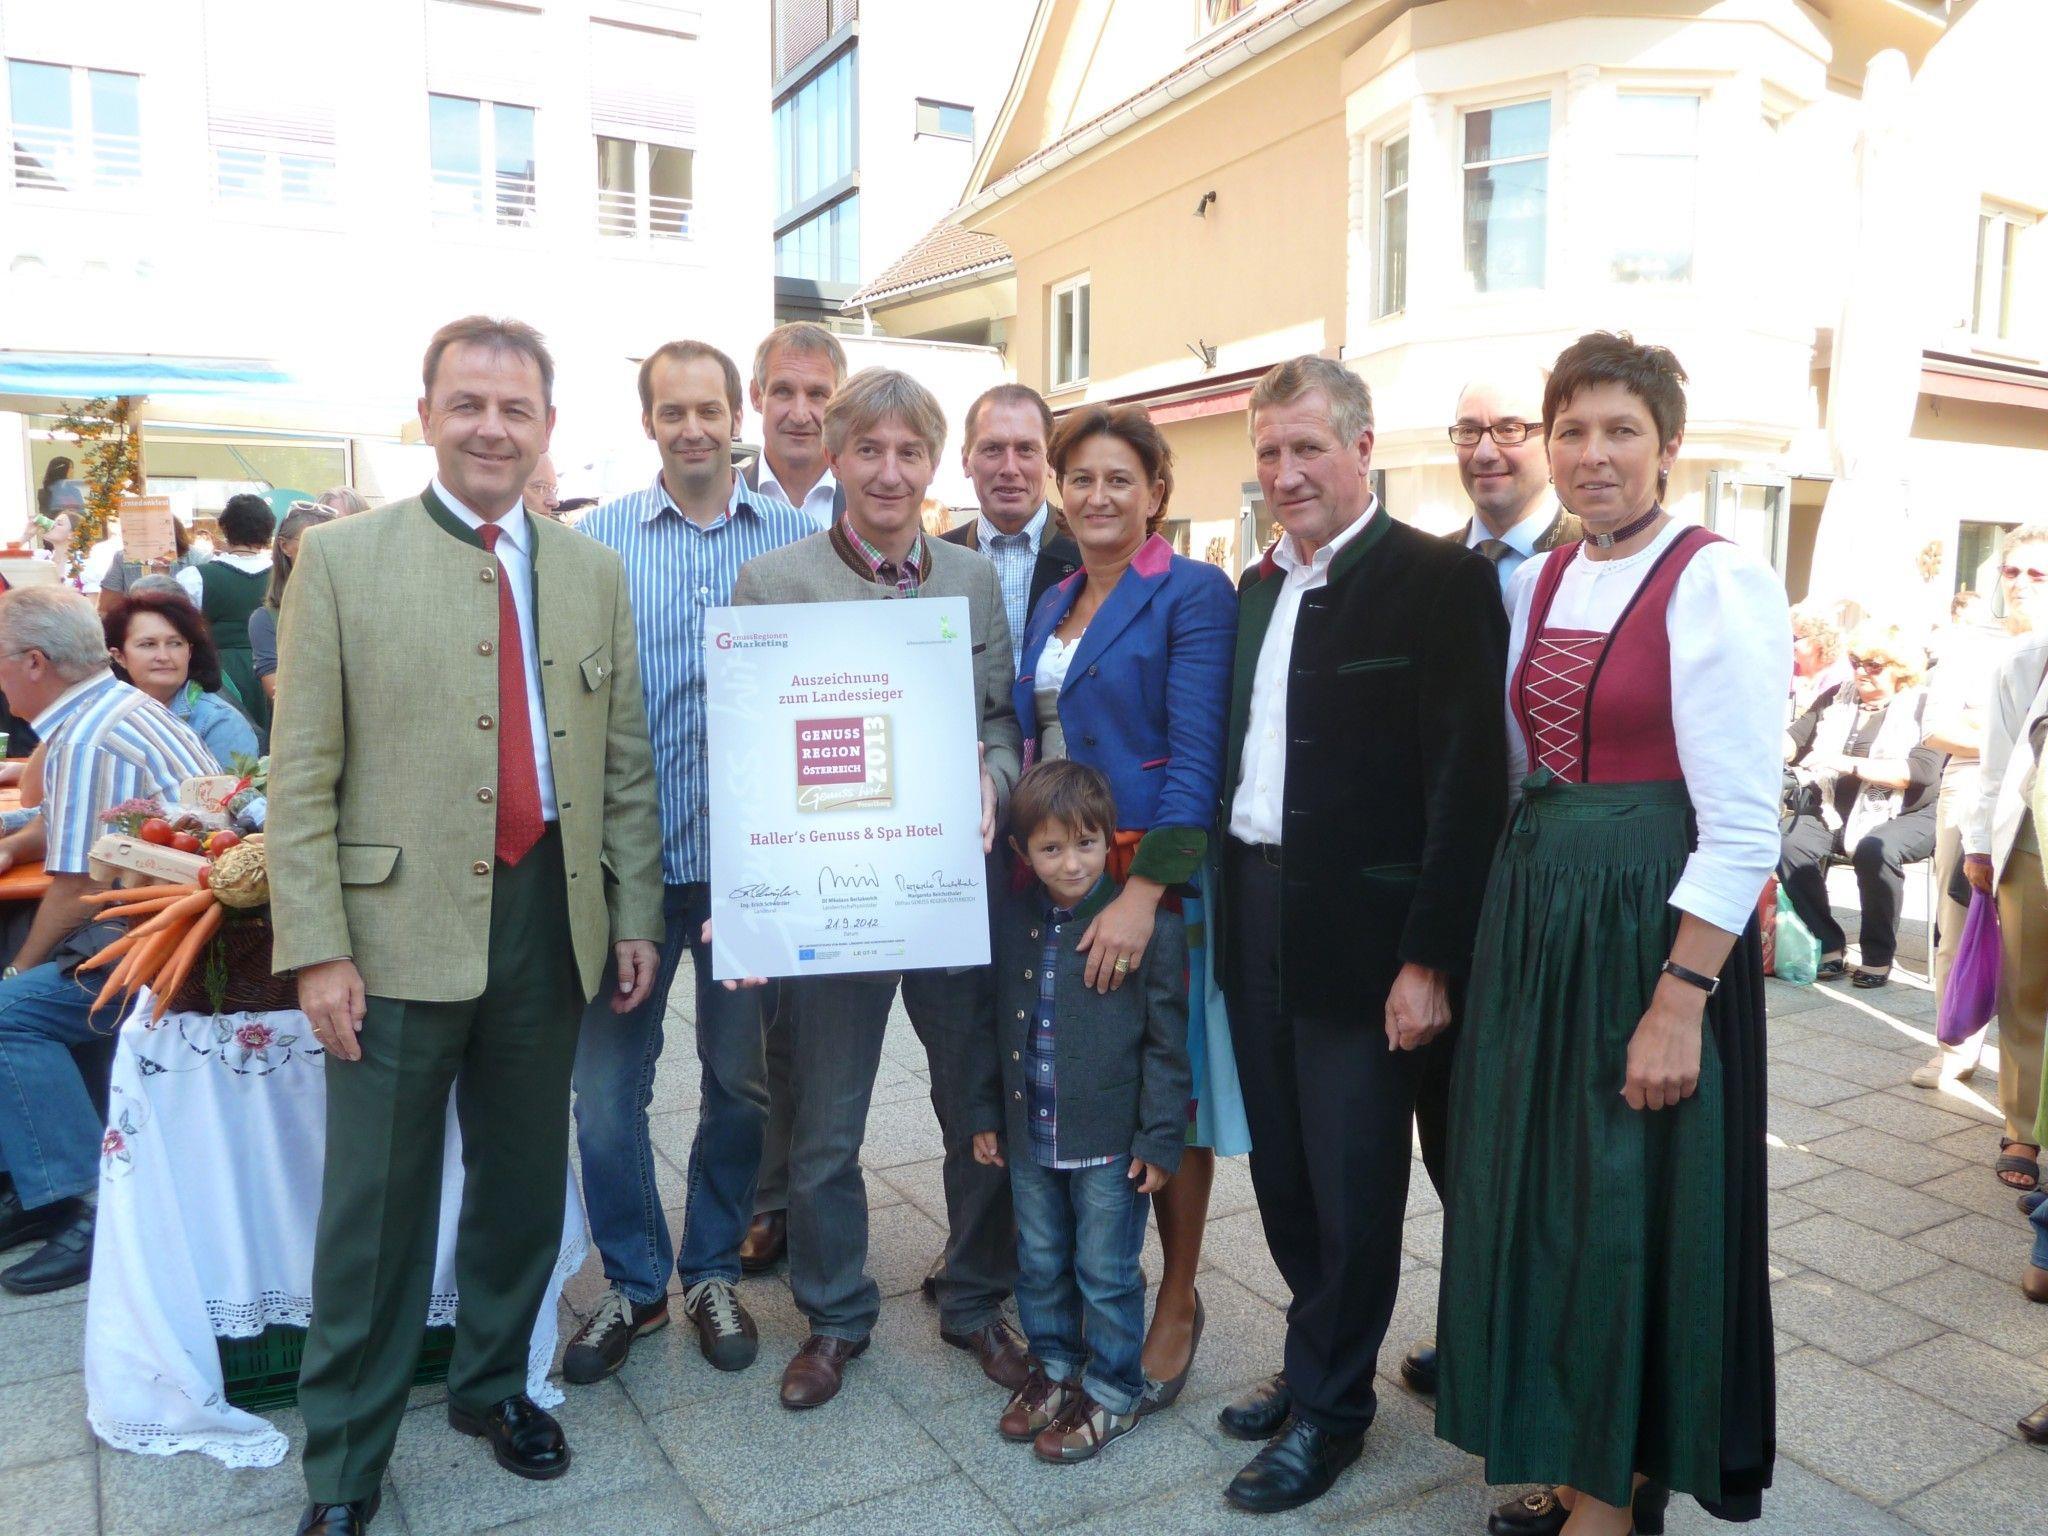 LR Schwärzler gratuliert Haller's Genuss & Spa Hotel zum Landessieg.